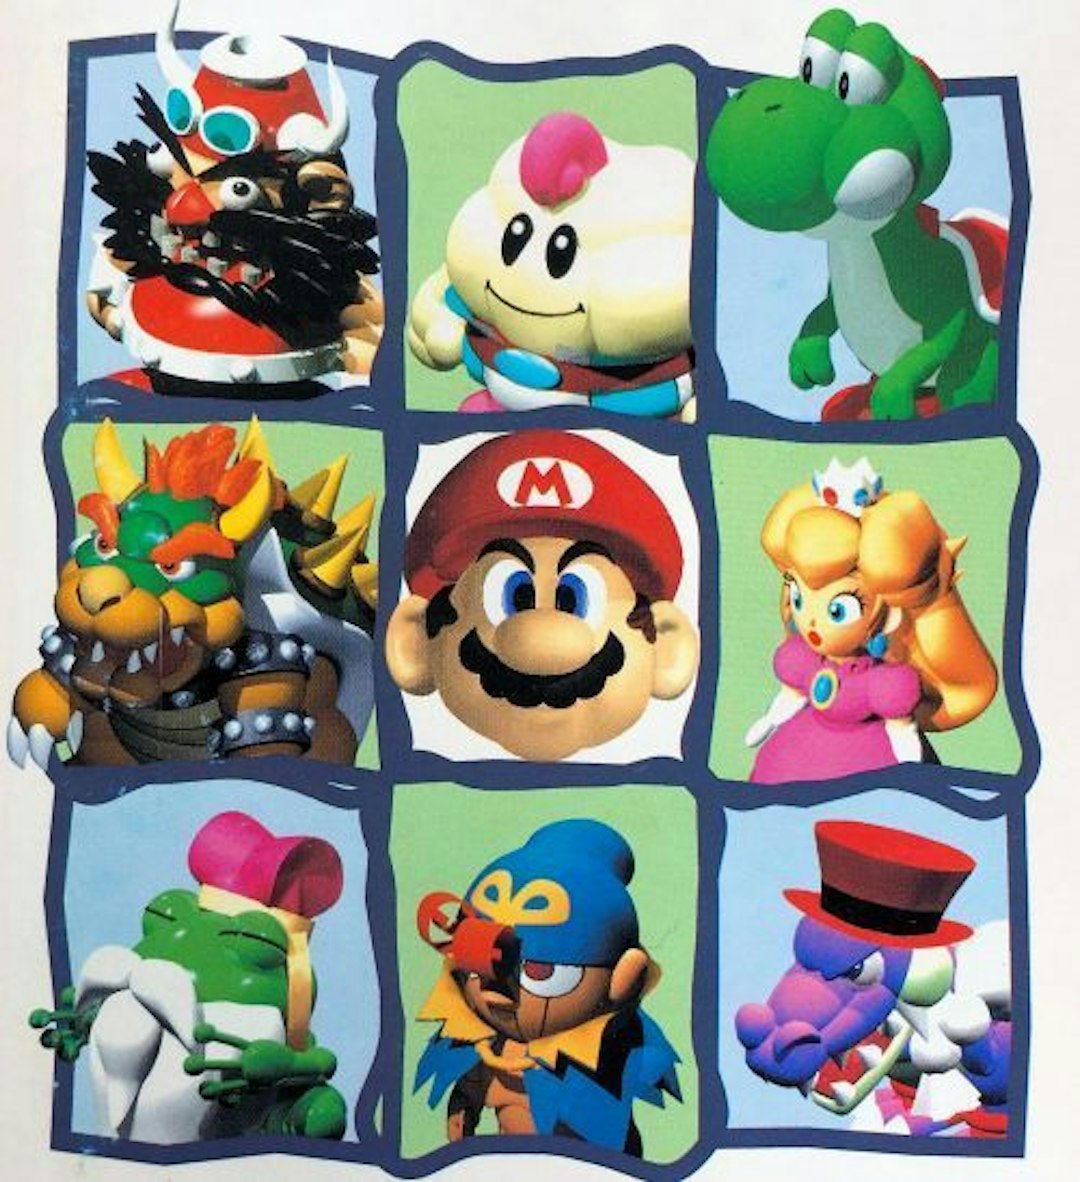 featured image - 10 meilleurs RPG Mario classés par ventes